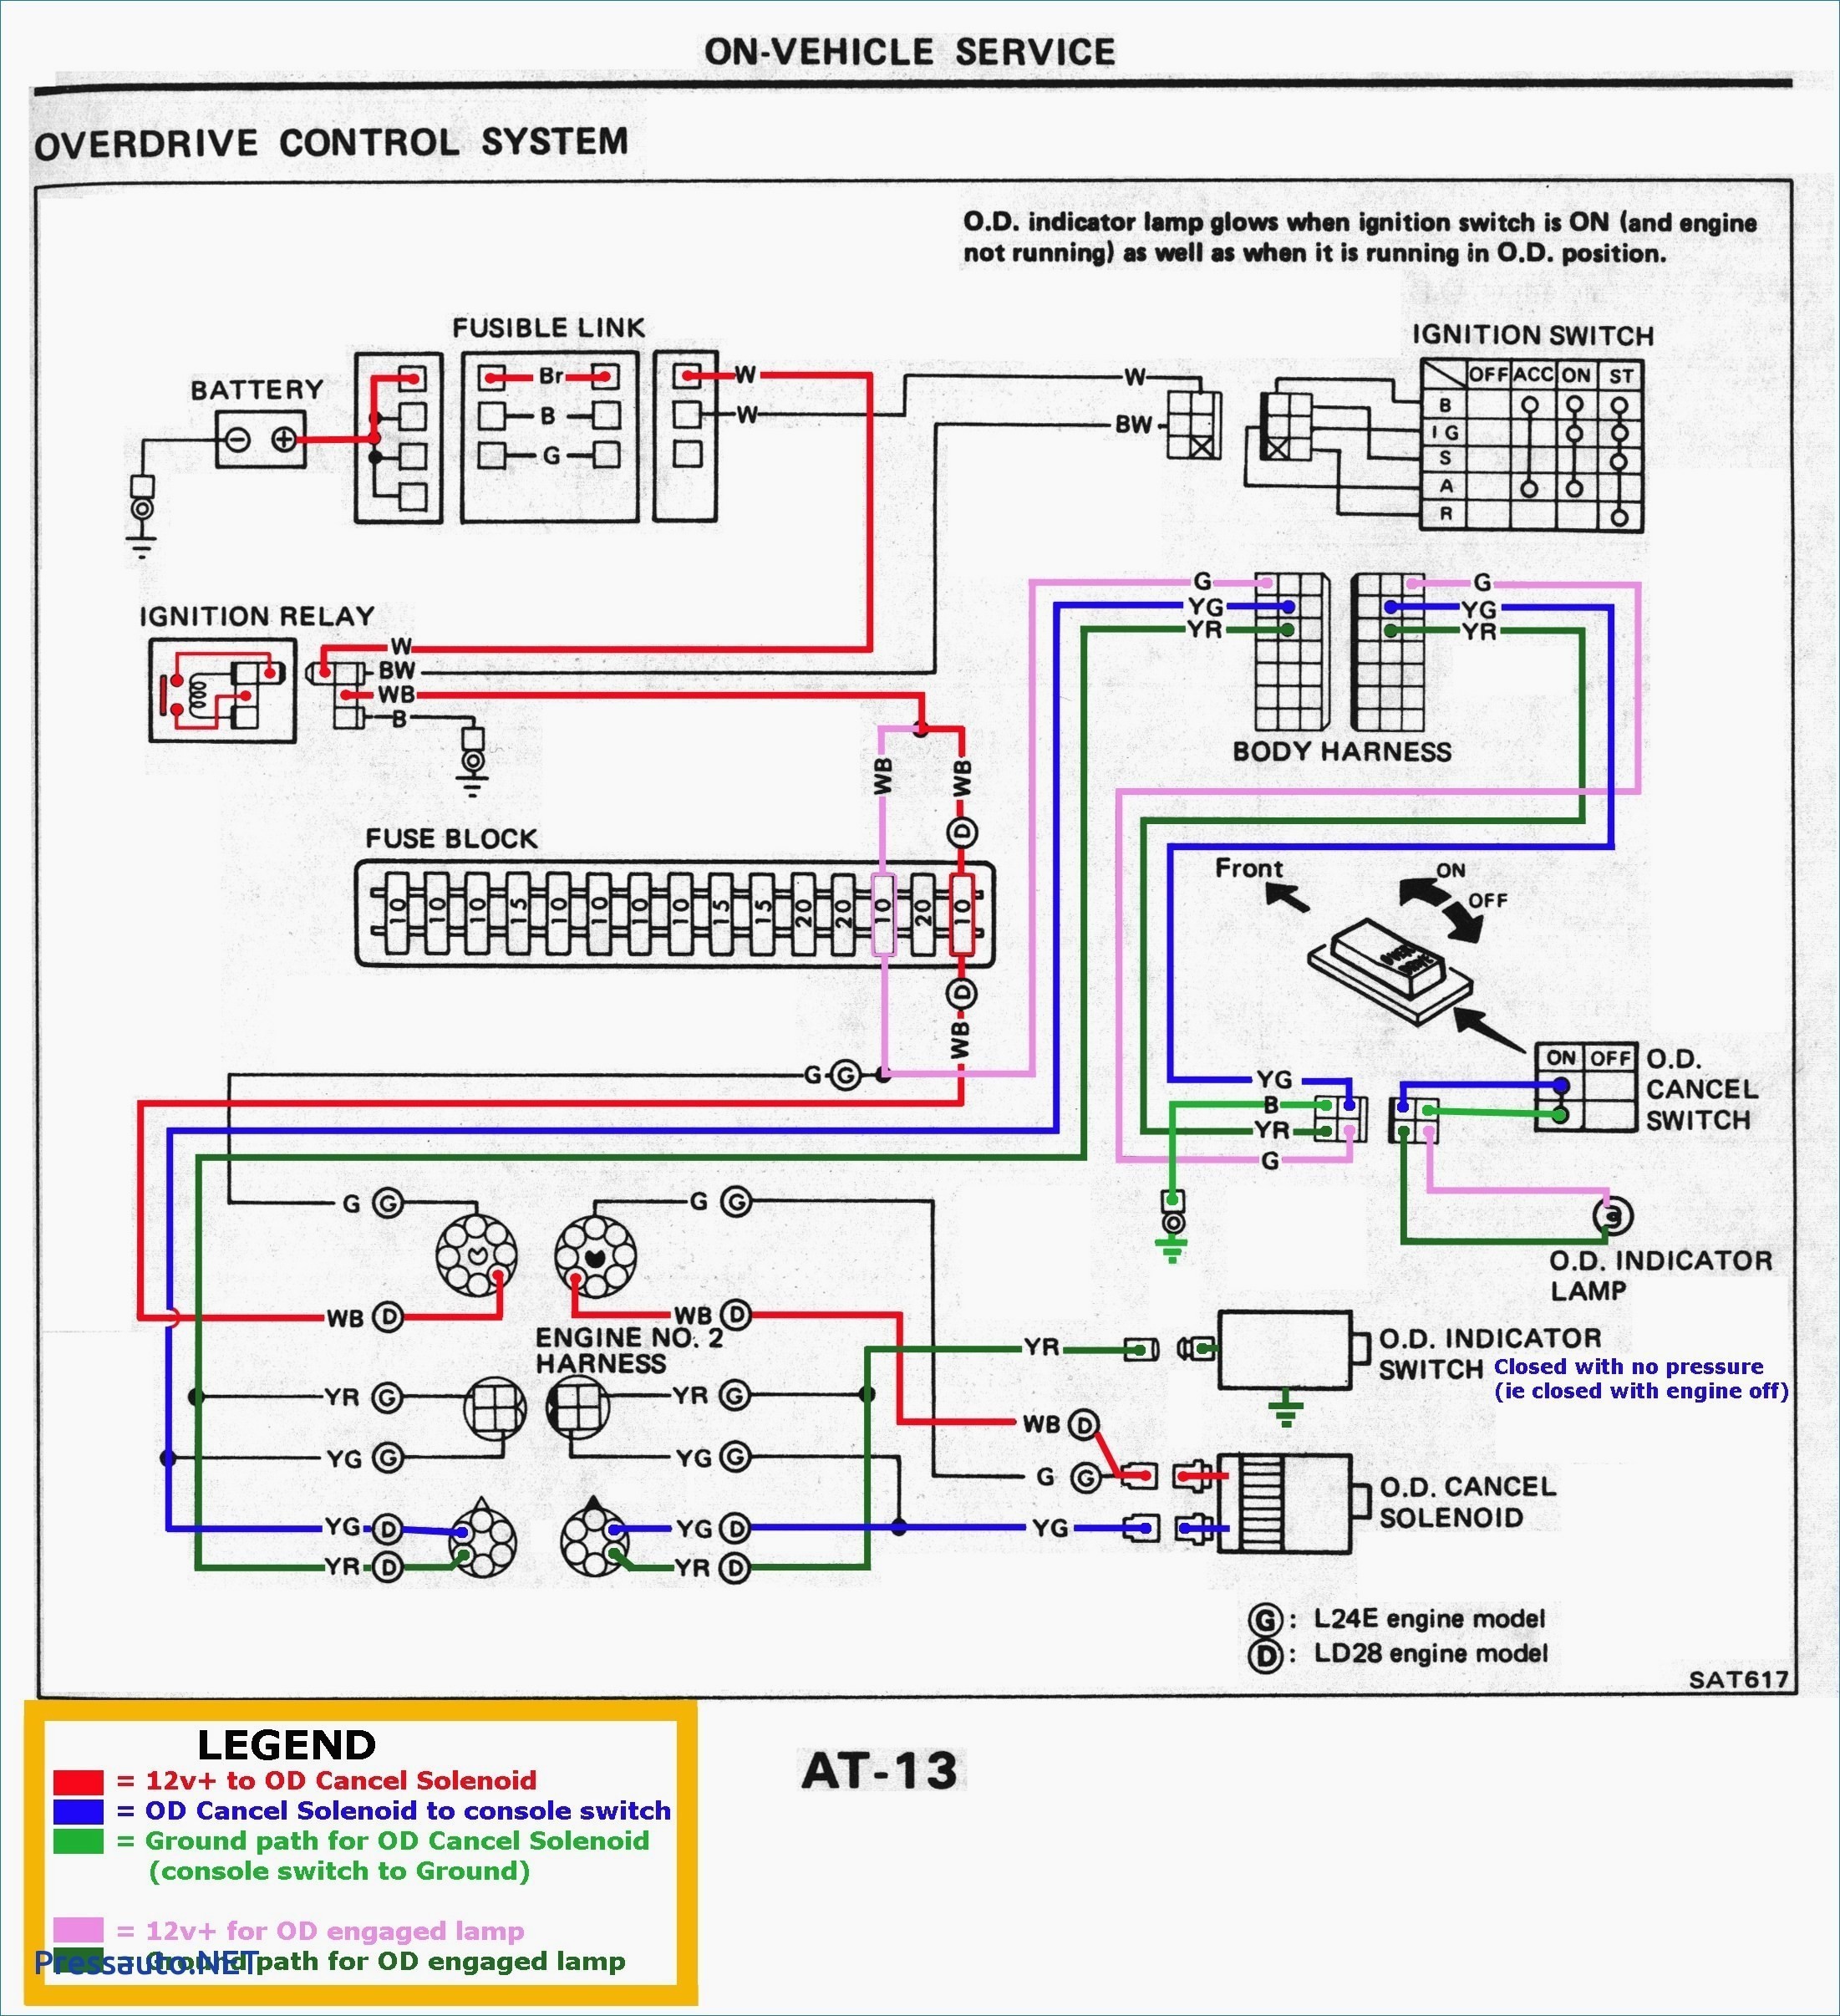 2003 Audi A4 1.8t Wiring Diagtrams 2003 Audi A4 B6 Radio Wiring Diagram Wiring Diagram and Schematic Of 2003 Audi A4 1.8t Wiring Diagtrams